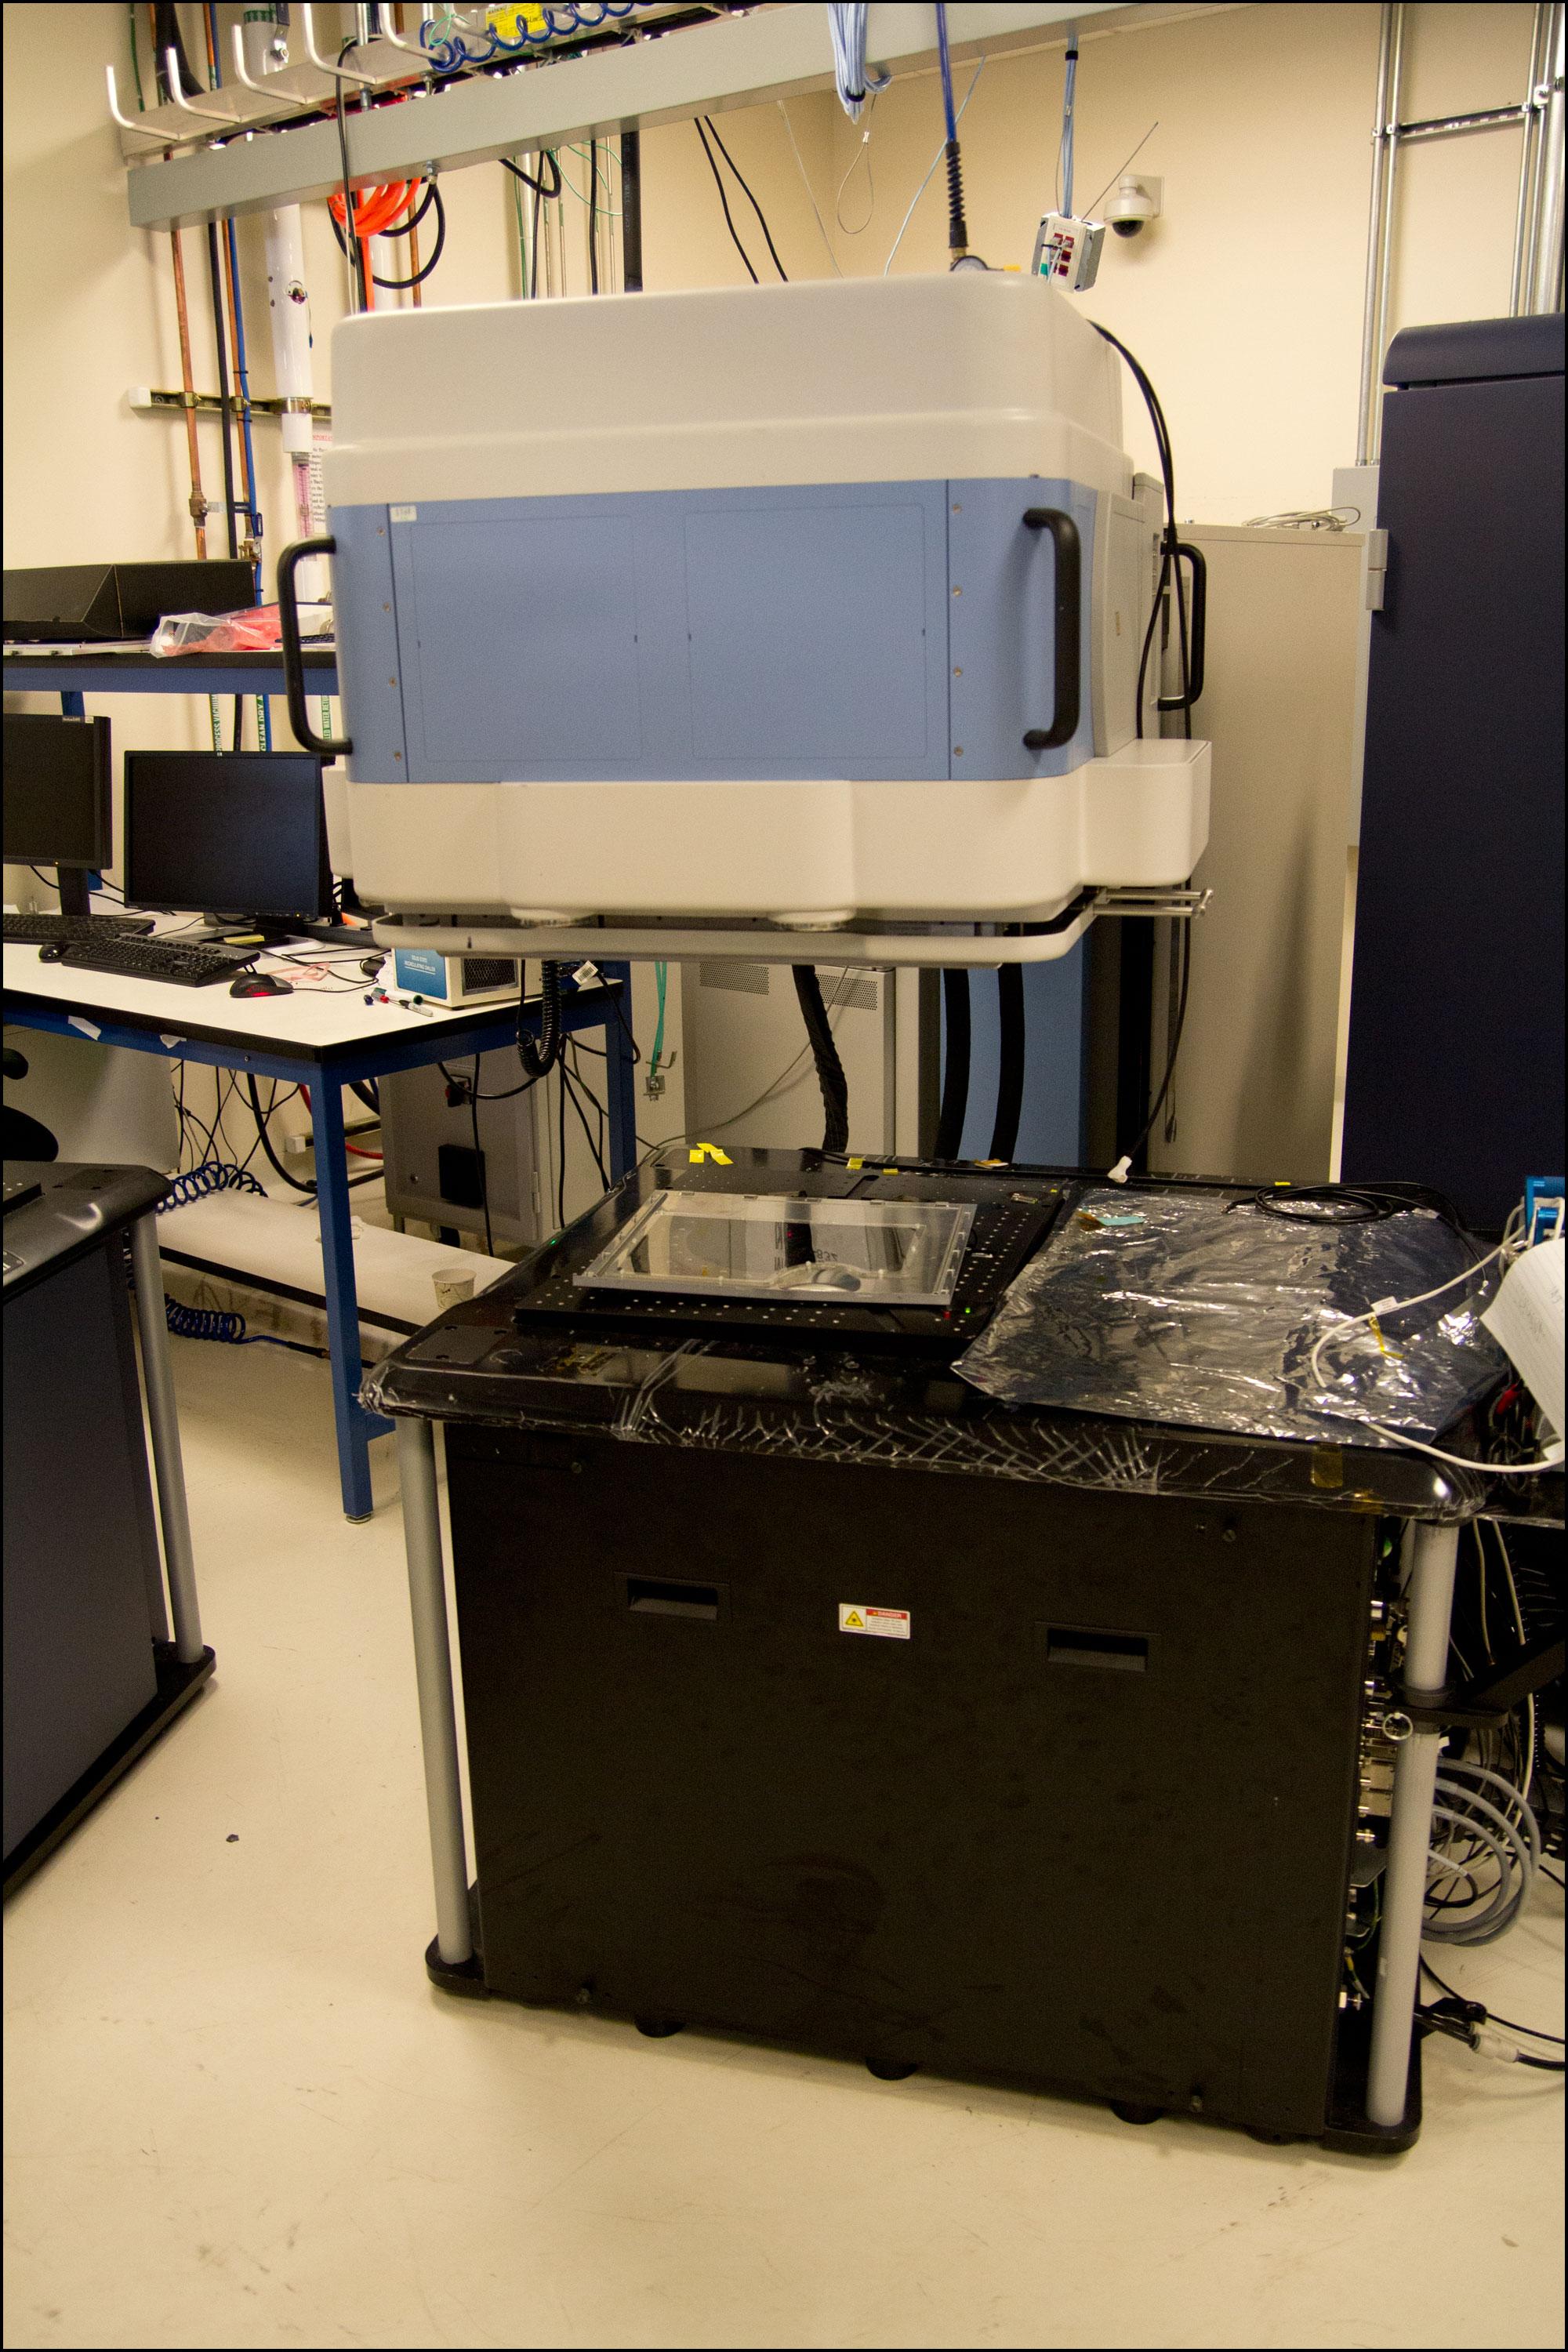 En av de mange maskinene rundt om i labben. Legg merke til kabinettdøren som er slengt på plass for å beskytte laserne.